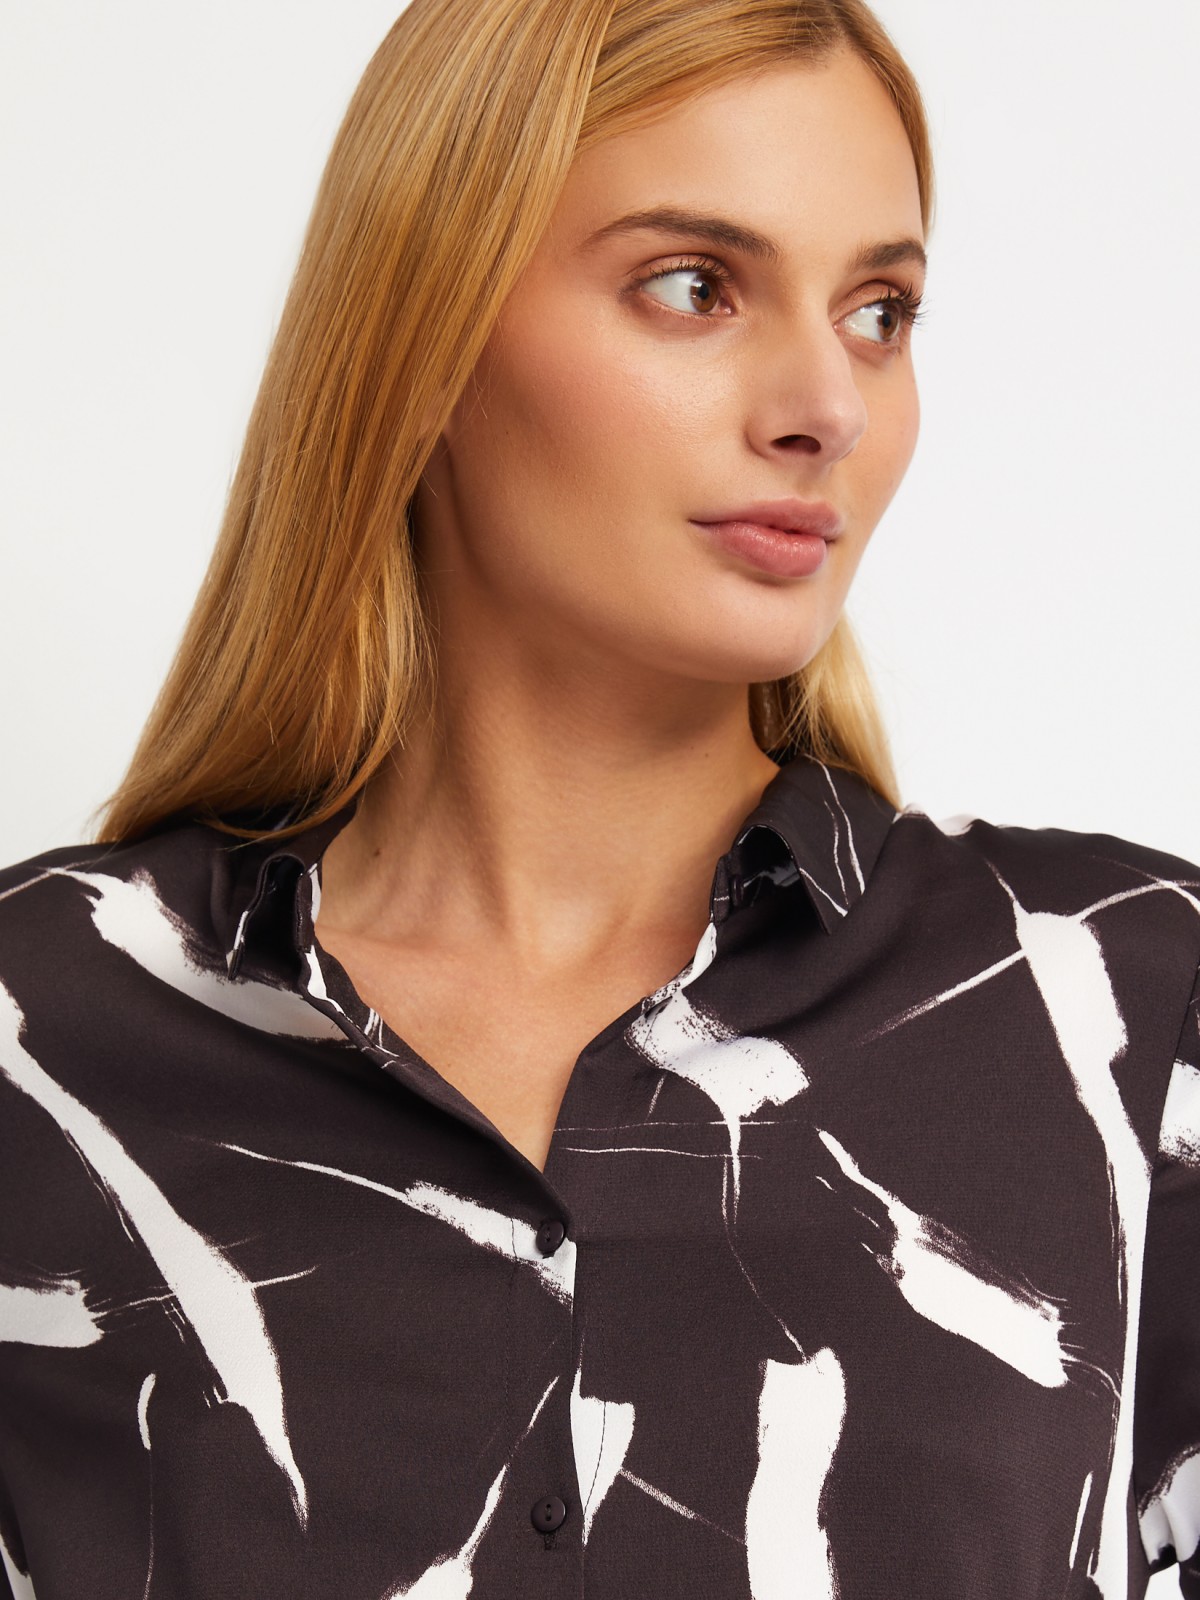 Атласное платье-рубашка с воротником и акцентном на талии zolla 02411827Y353, цвет коричневый, размер XS - фото 5